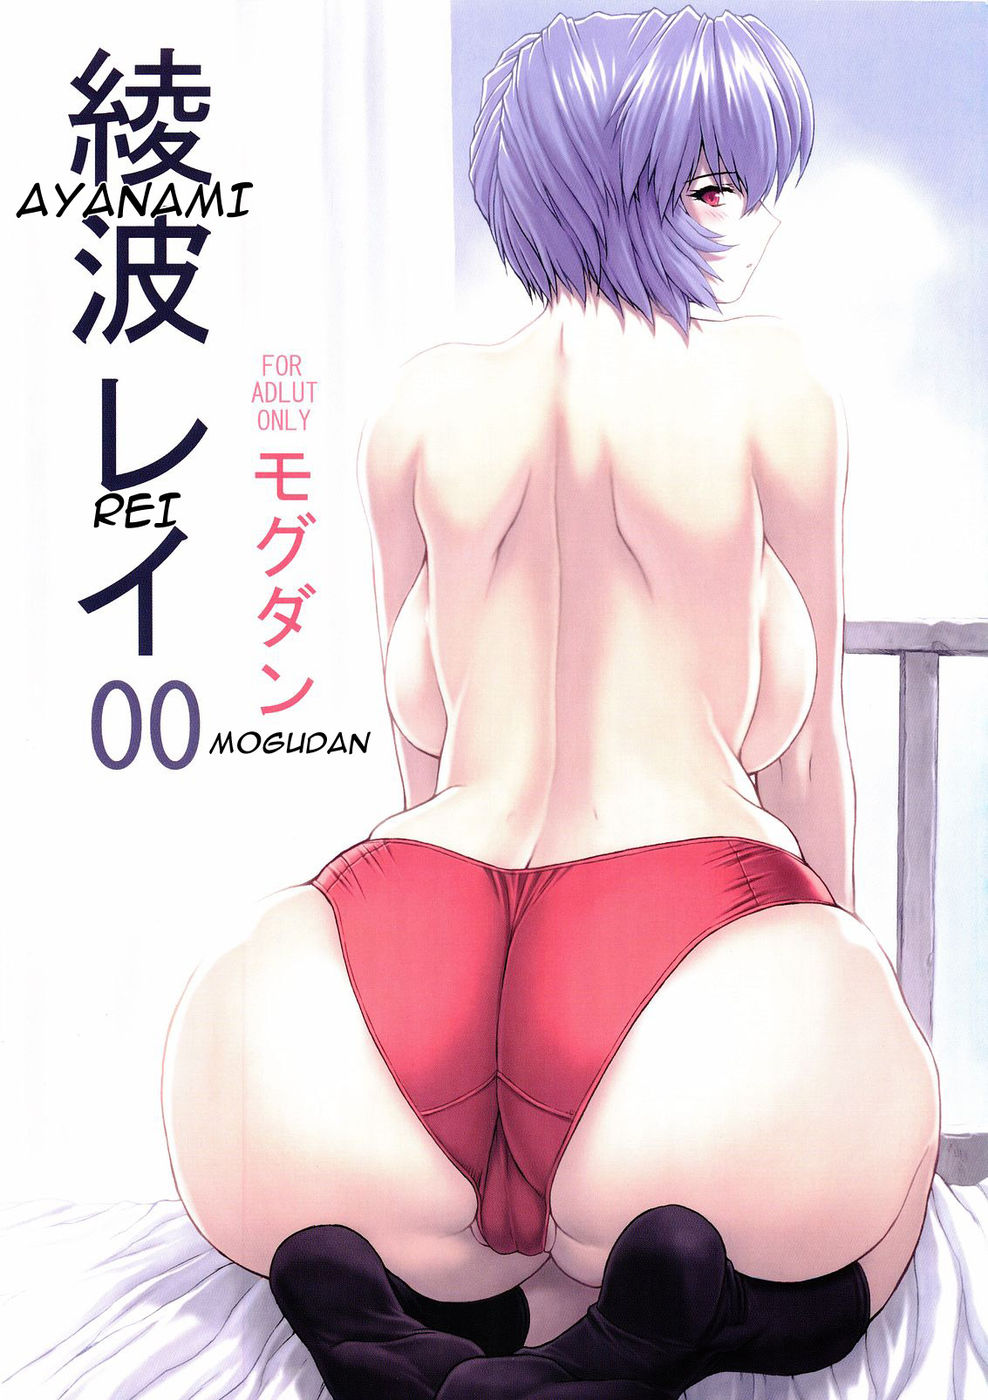 Hentai Manga Comic-v22m-Ayanami Rei 00-Read-1